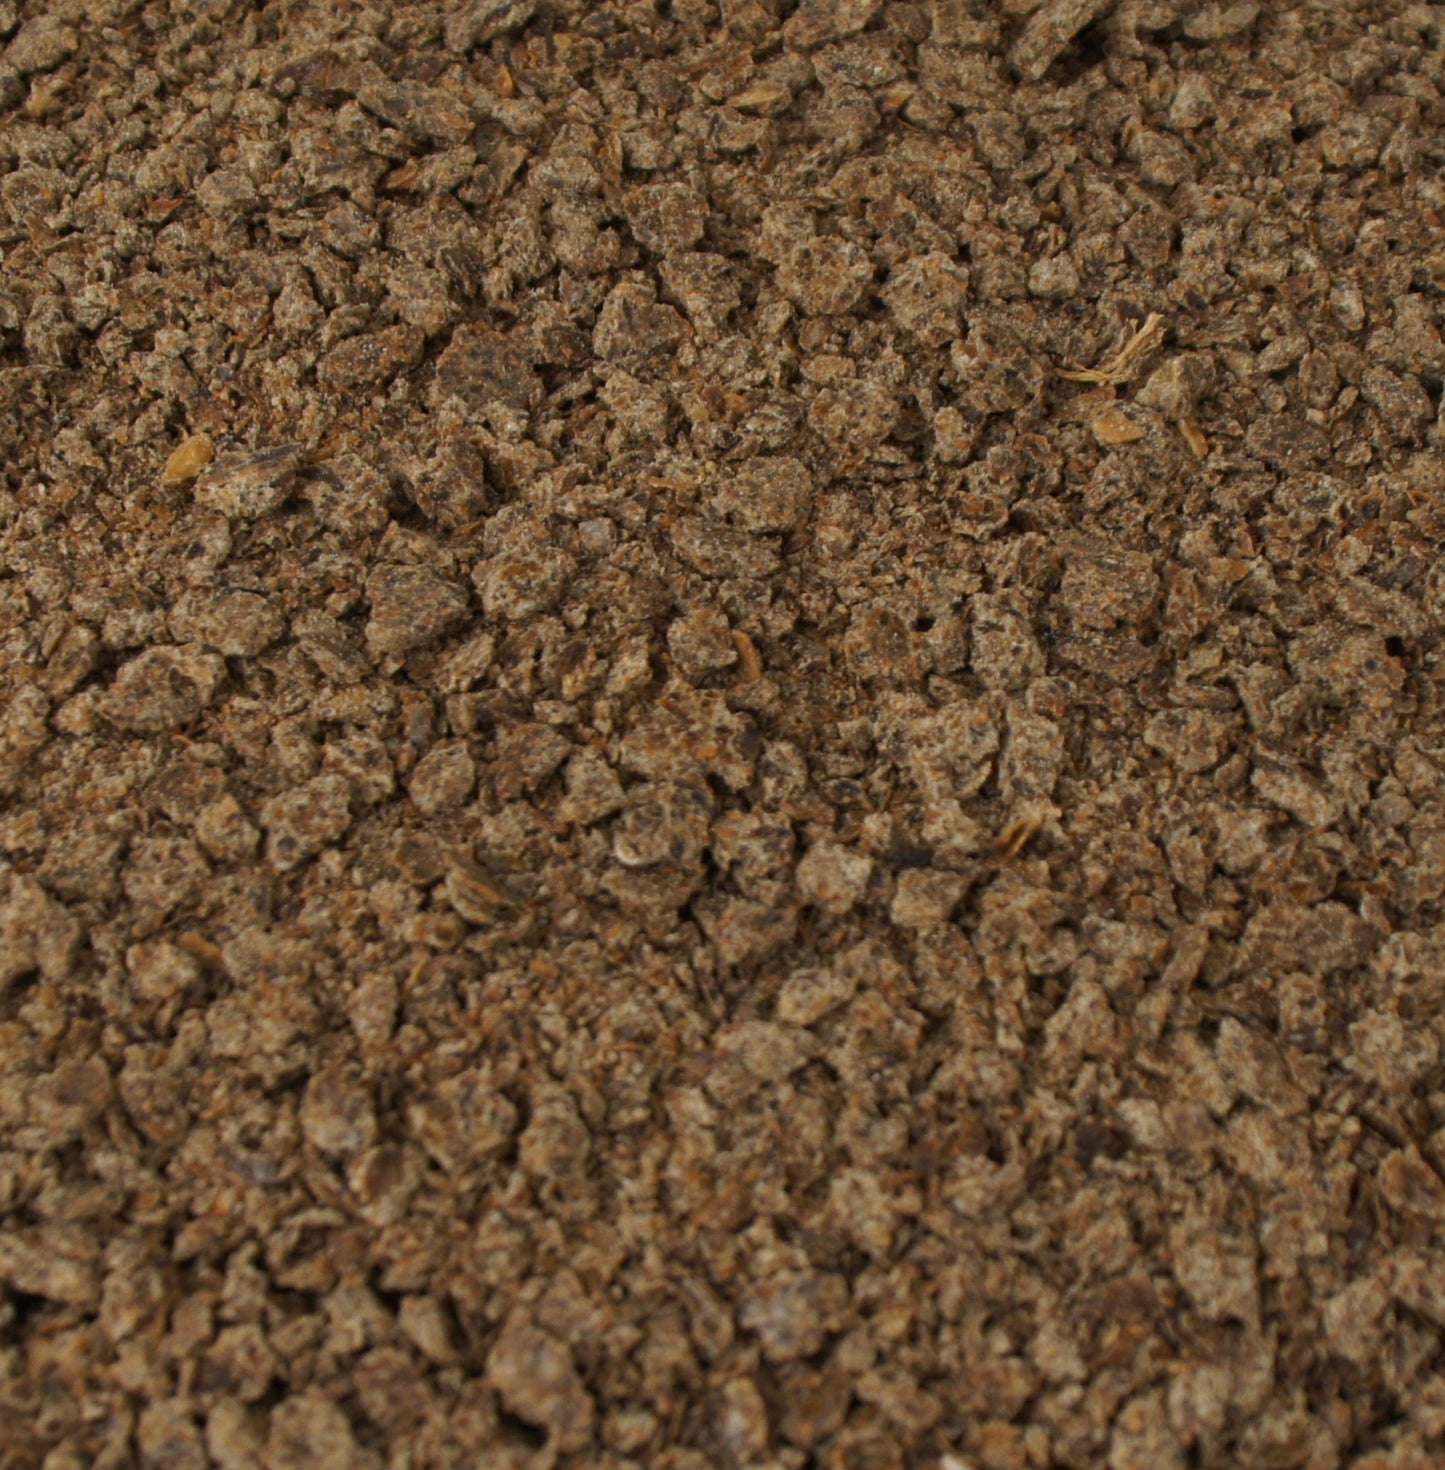 Mariendistelsamen -granuliert- ist bekannt für seine entgiftenden Eigenschaften